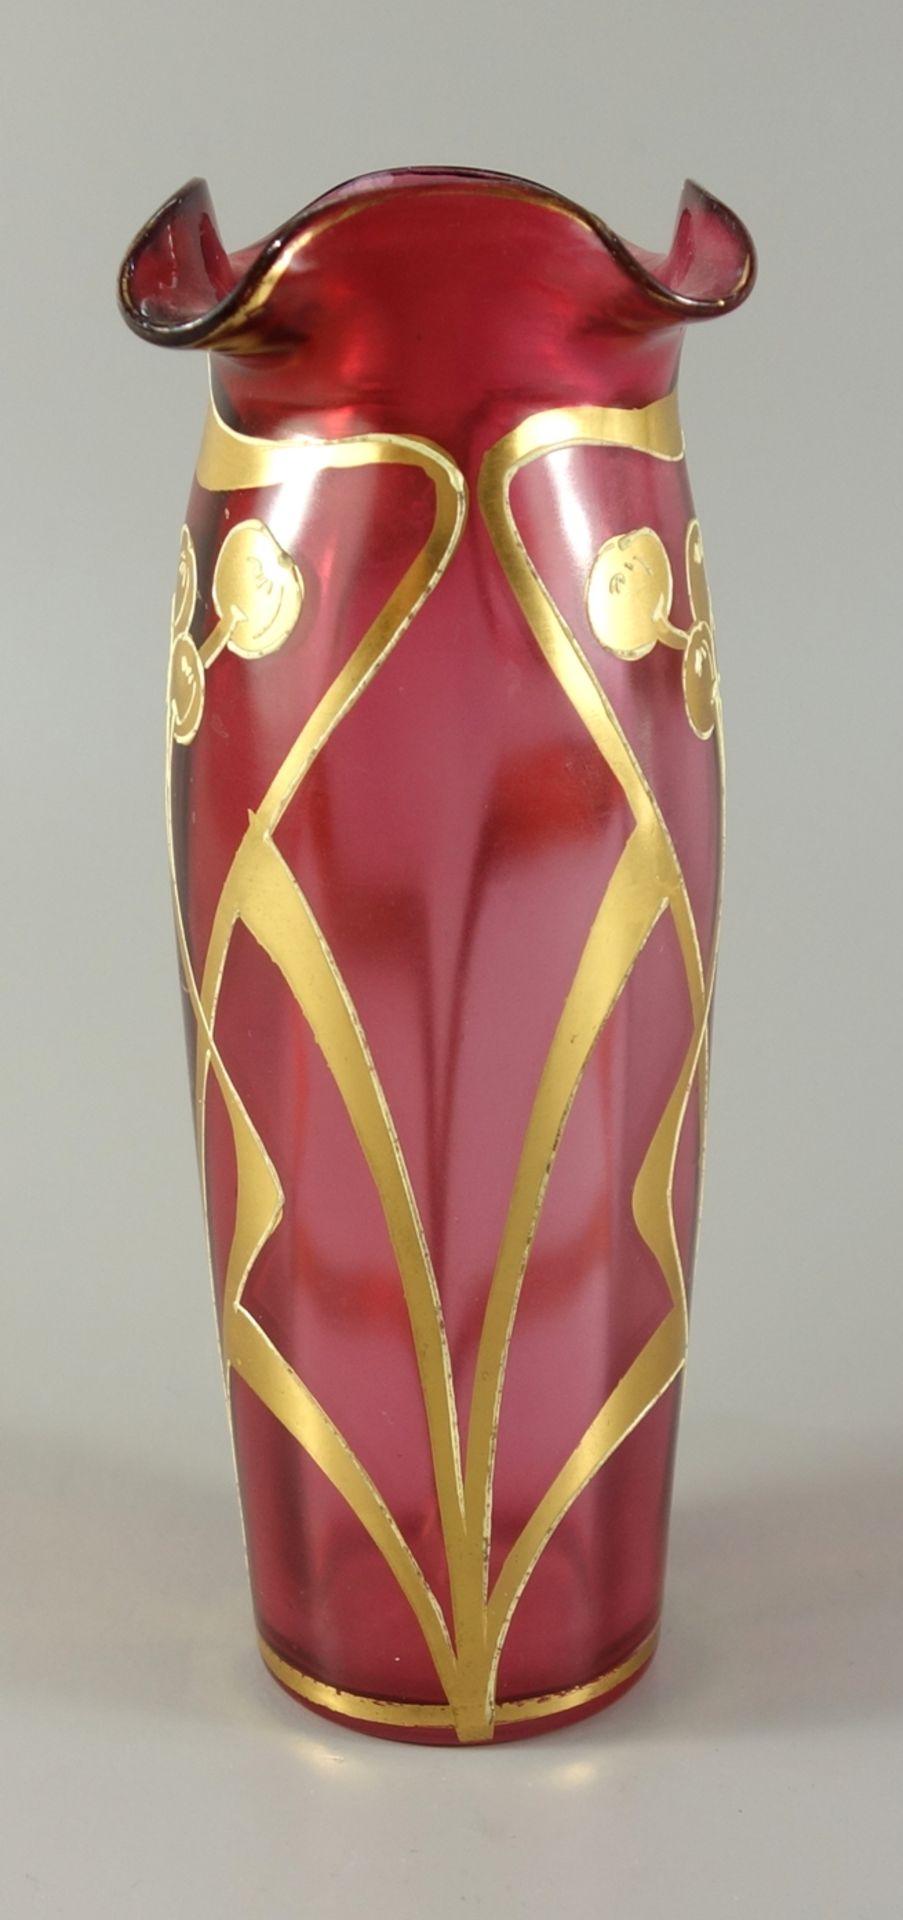 Vase, Jugendstil, Süddeutschland, um 1900, rosa Glas mit floralem Golddekor, gewellte Mündung, - Bild 2 aus 2